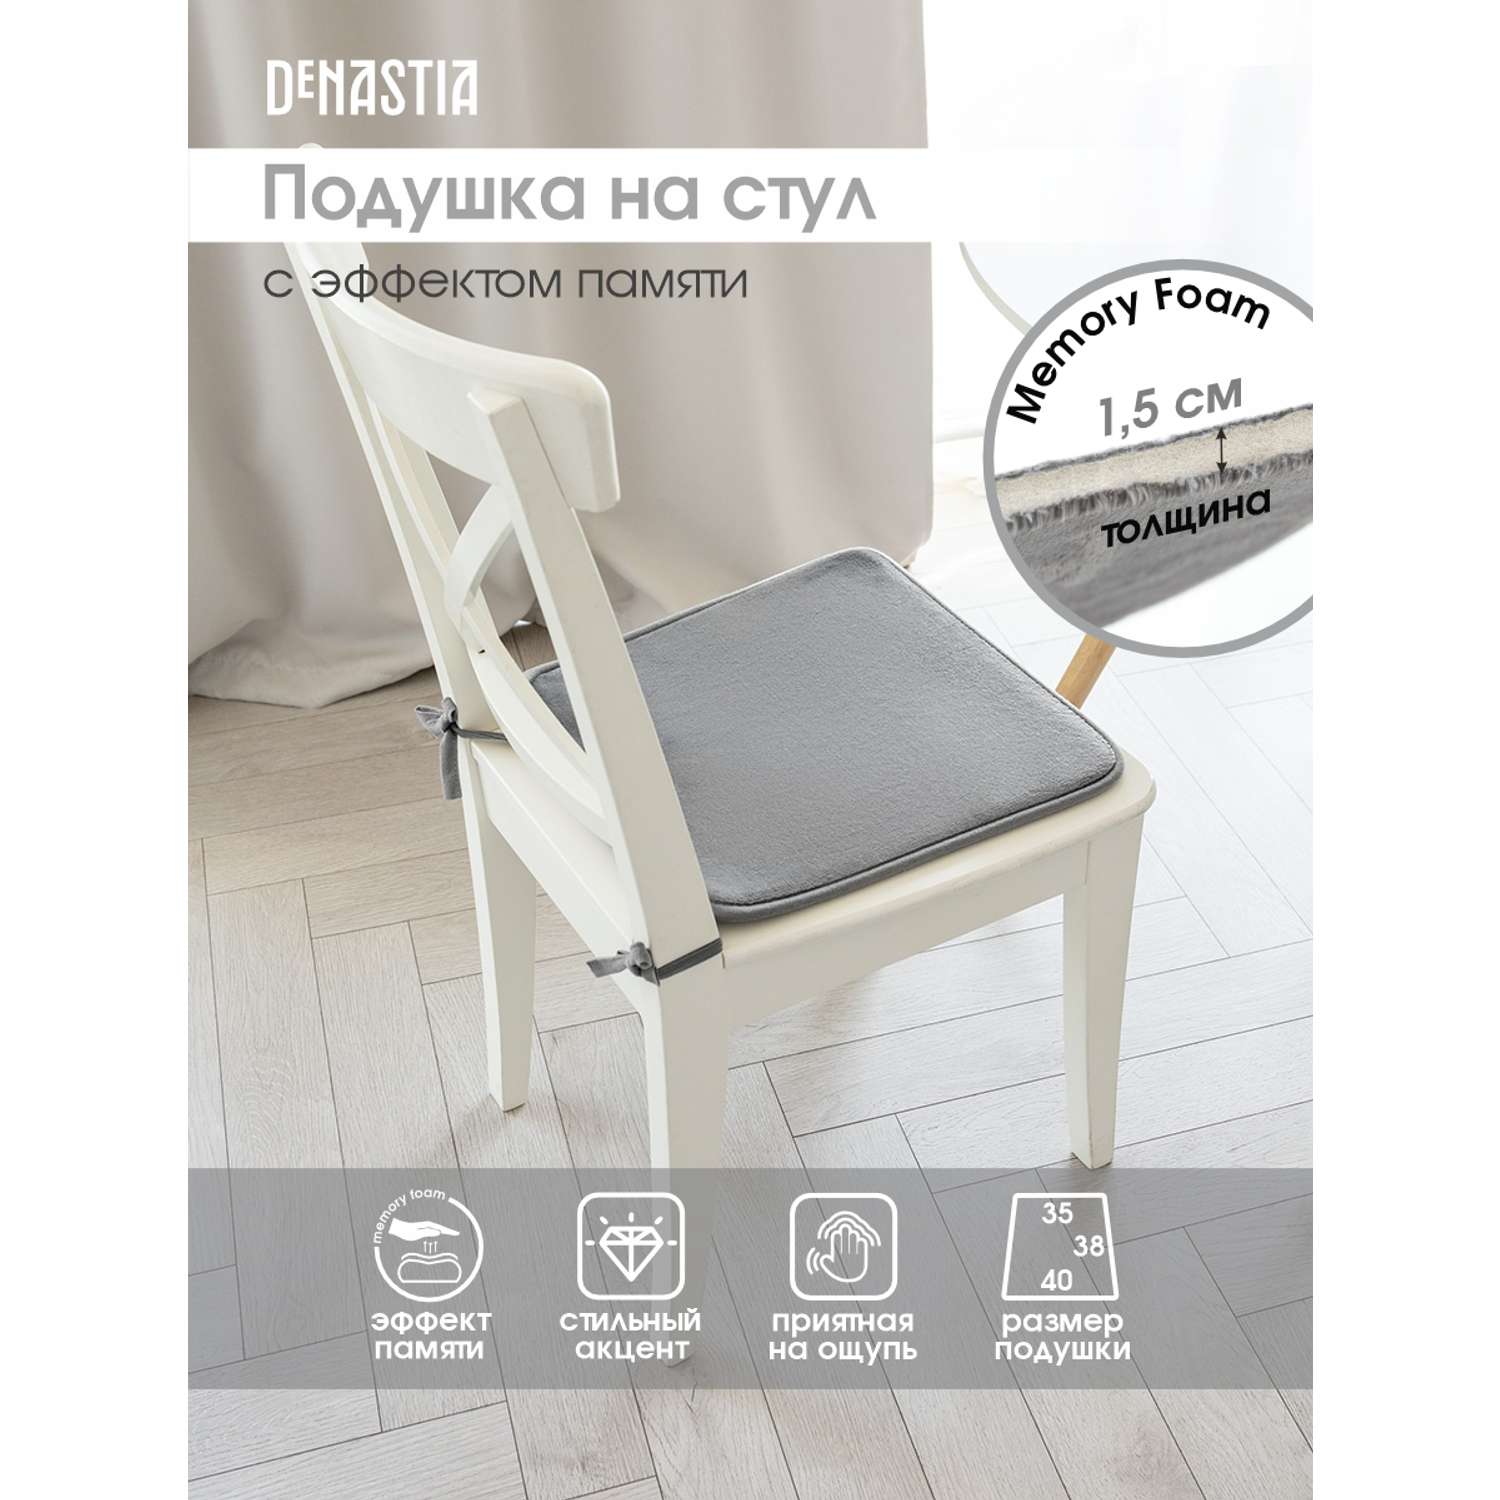 Подушка на стул DeNASTIA с эффектом памяти 40x35x38 см серый P111144 - фото 2